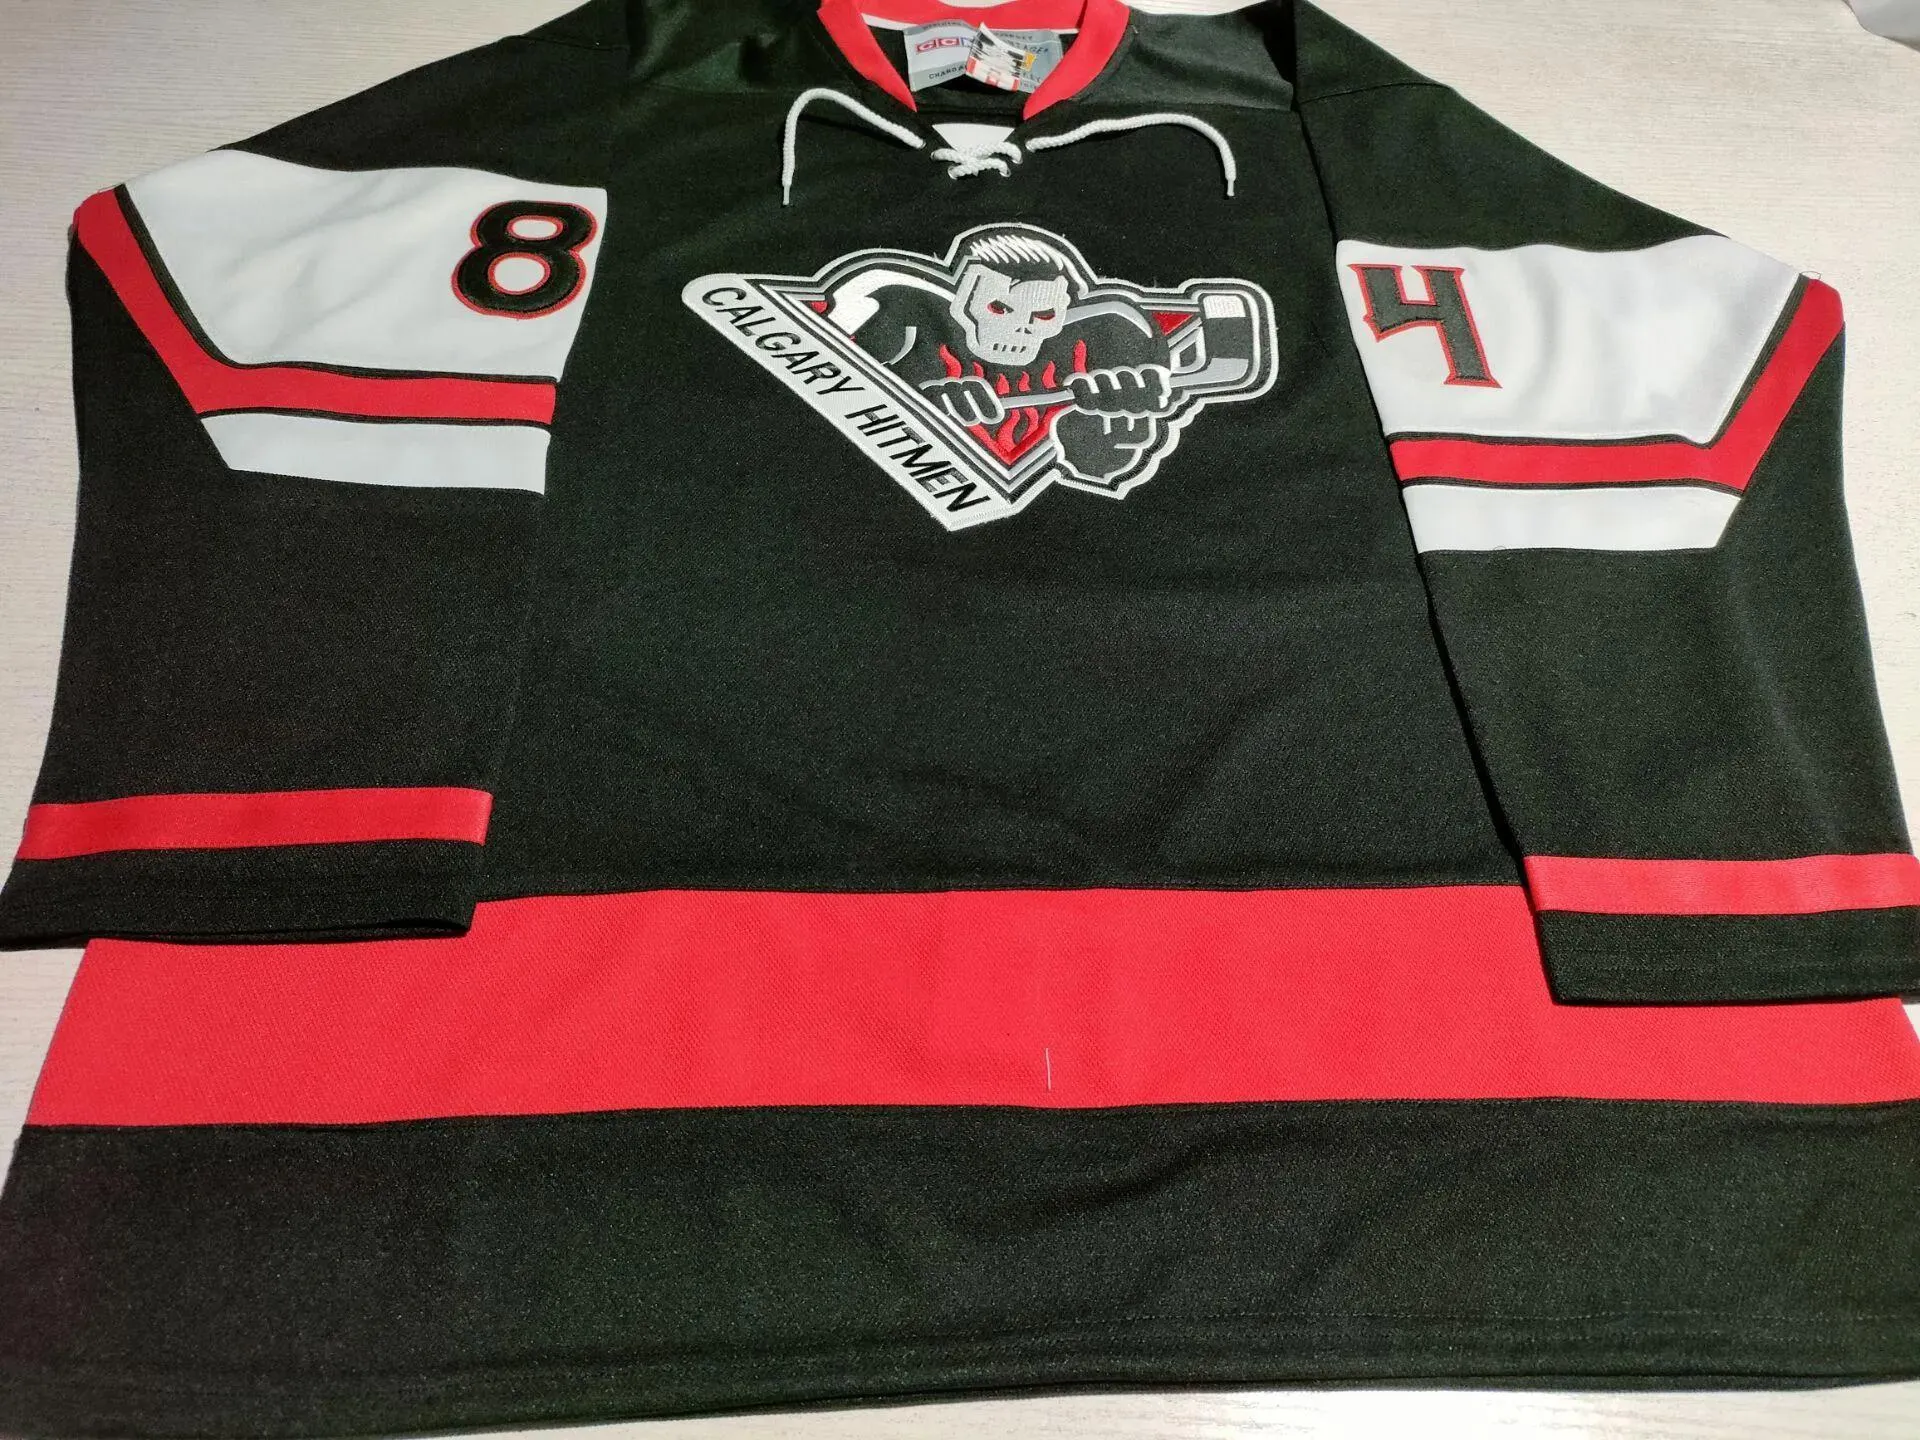 Изготовленные на заказ WHL Bret Hart 84 Calgary Hitmen винтажные хоккейные майки красные, черные по индивидуальному заказу любое имя, трикотажные изделия с вышивкой CCM